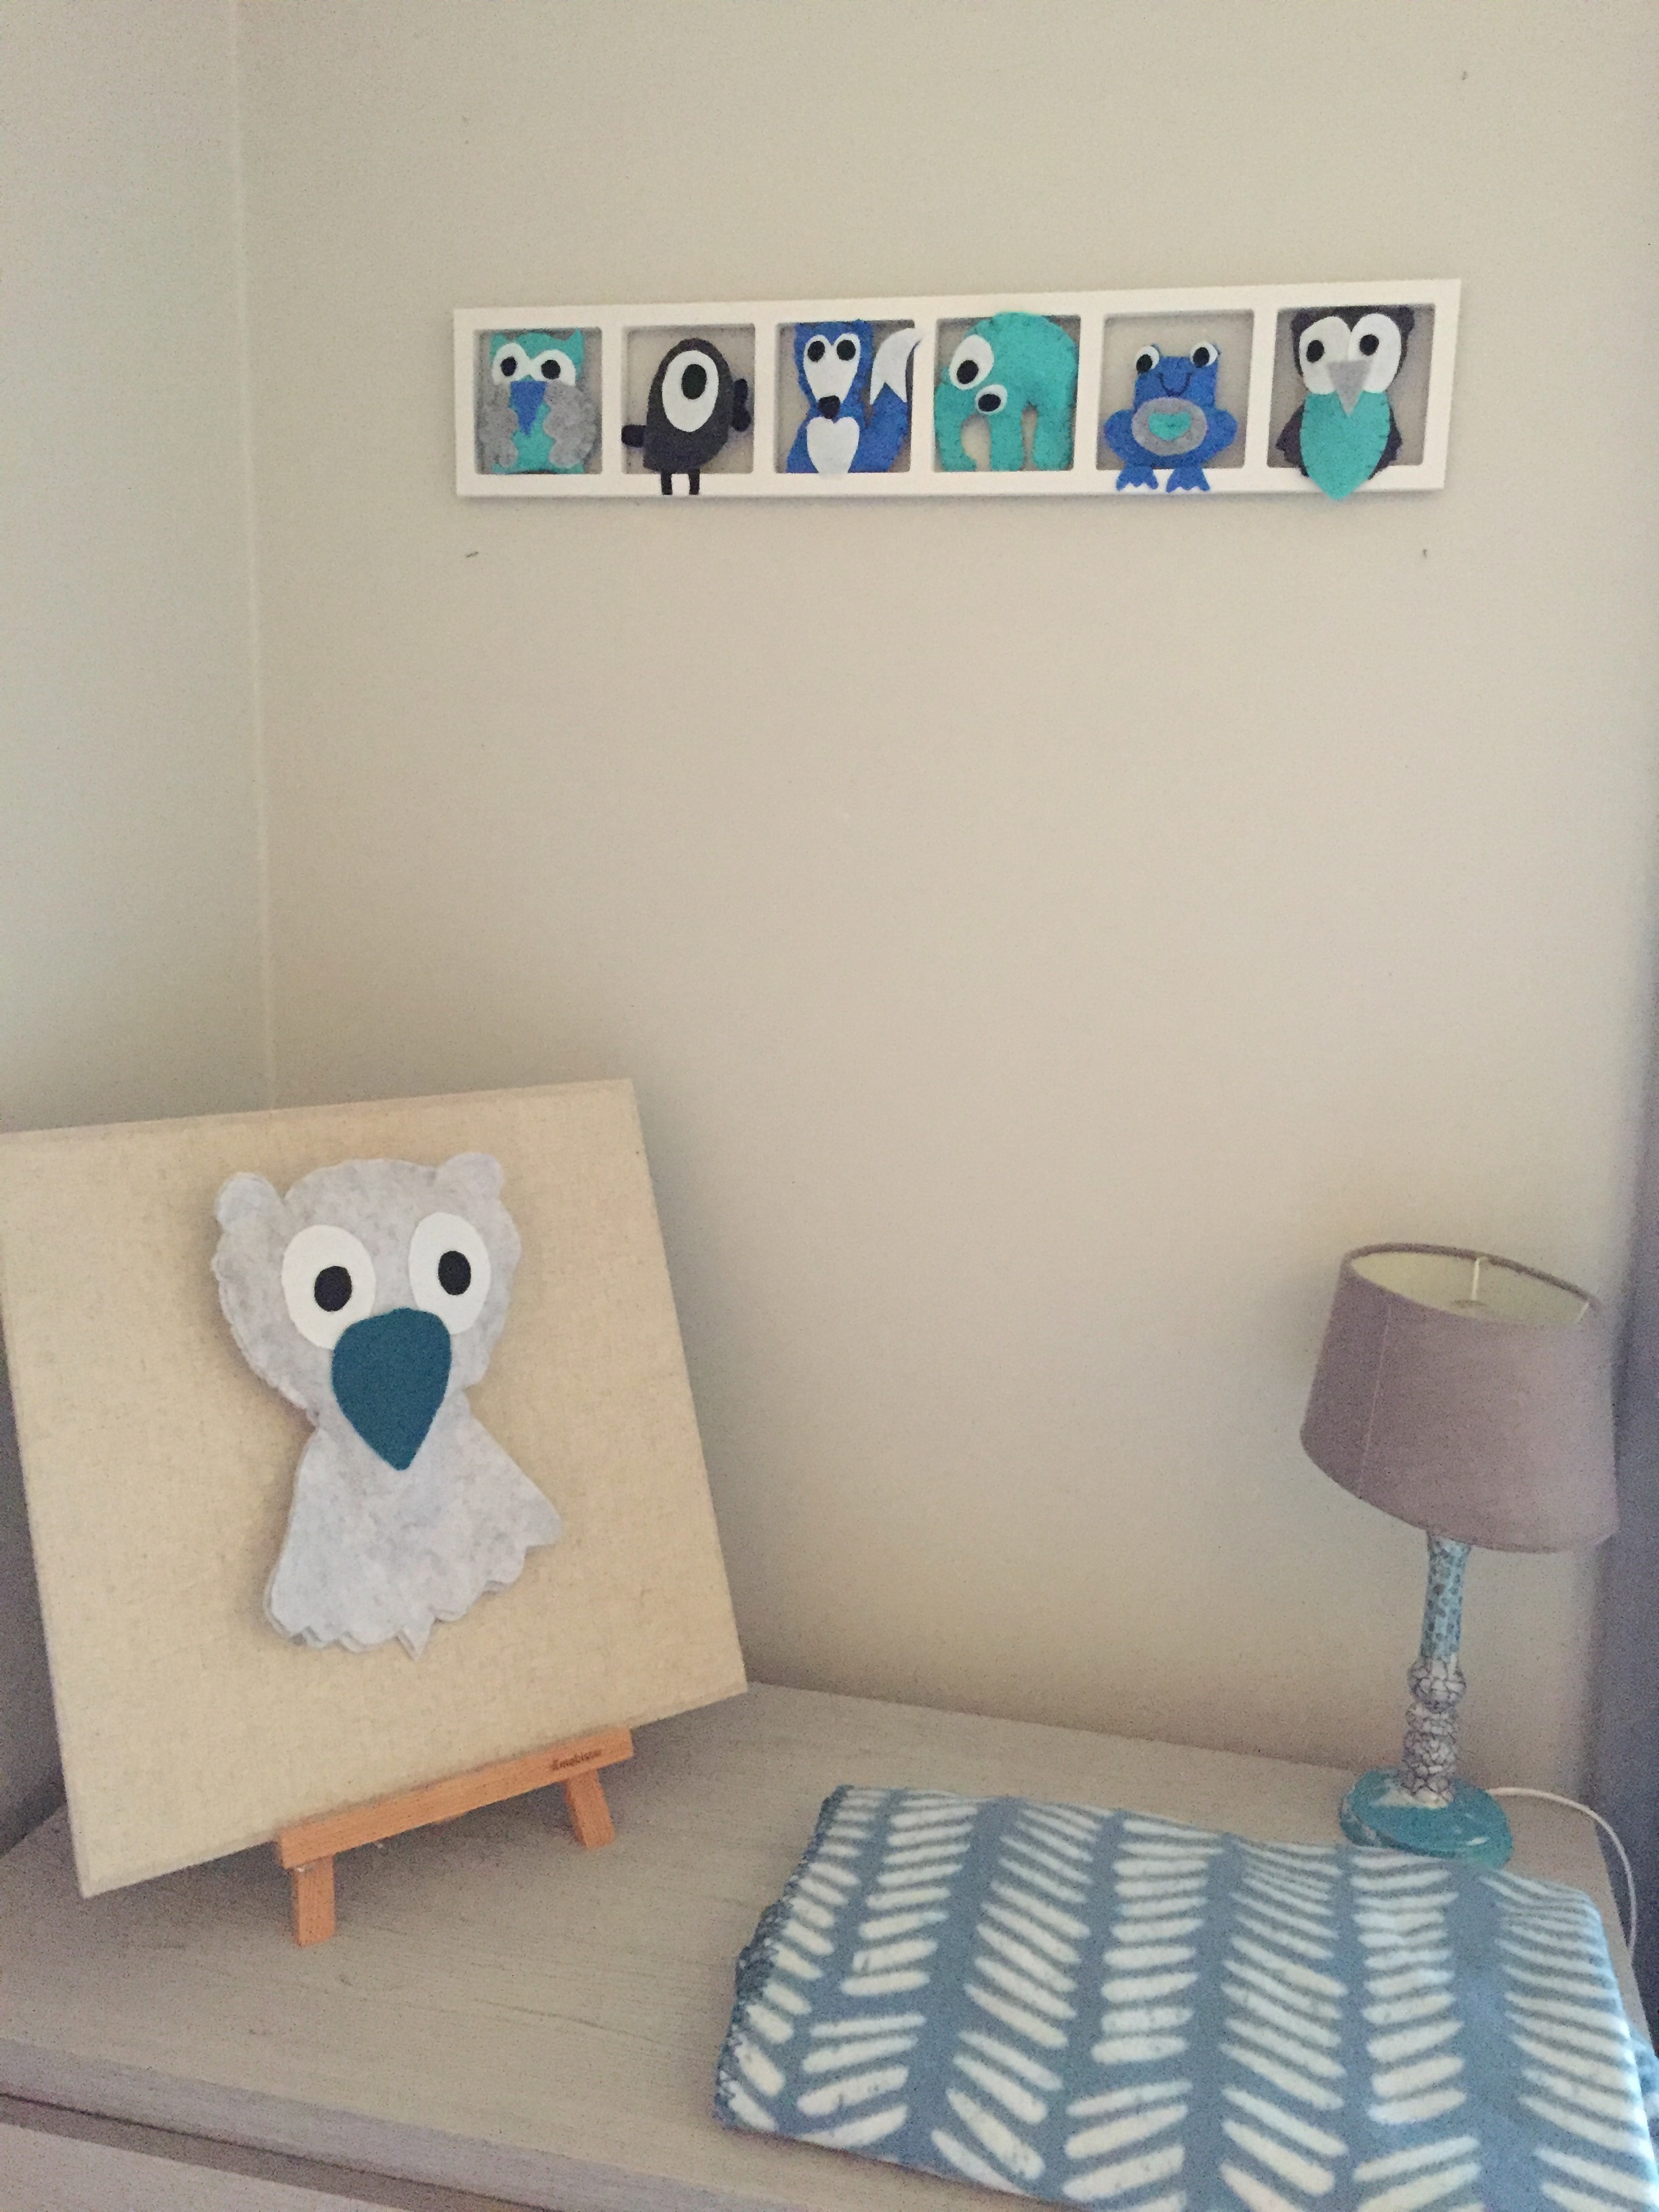 Deco chambre bebe, chambre enfant, cadre mural, animaux en feutrine, bleu taupe beige turquoise